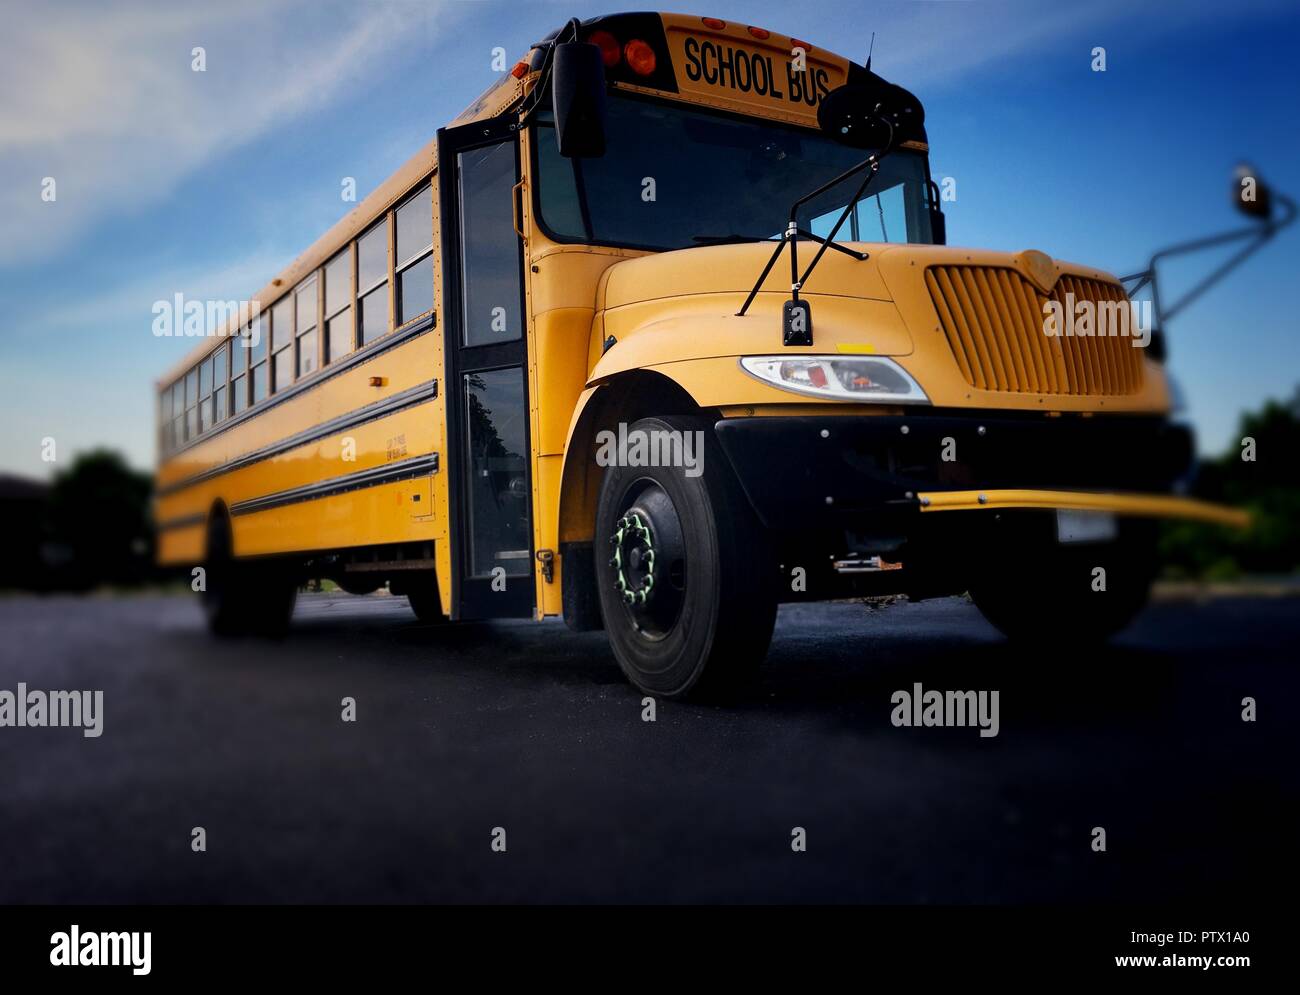 Niedrigen winkel Bild der gelben Schulbus Von vorn rechts Tür und Grill gesehen Stockfoto